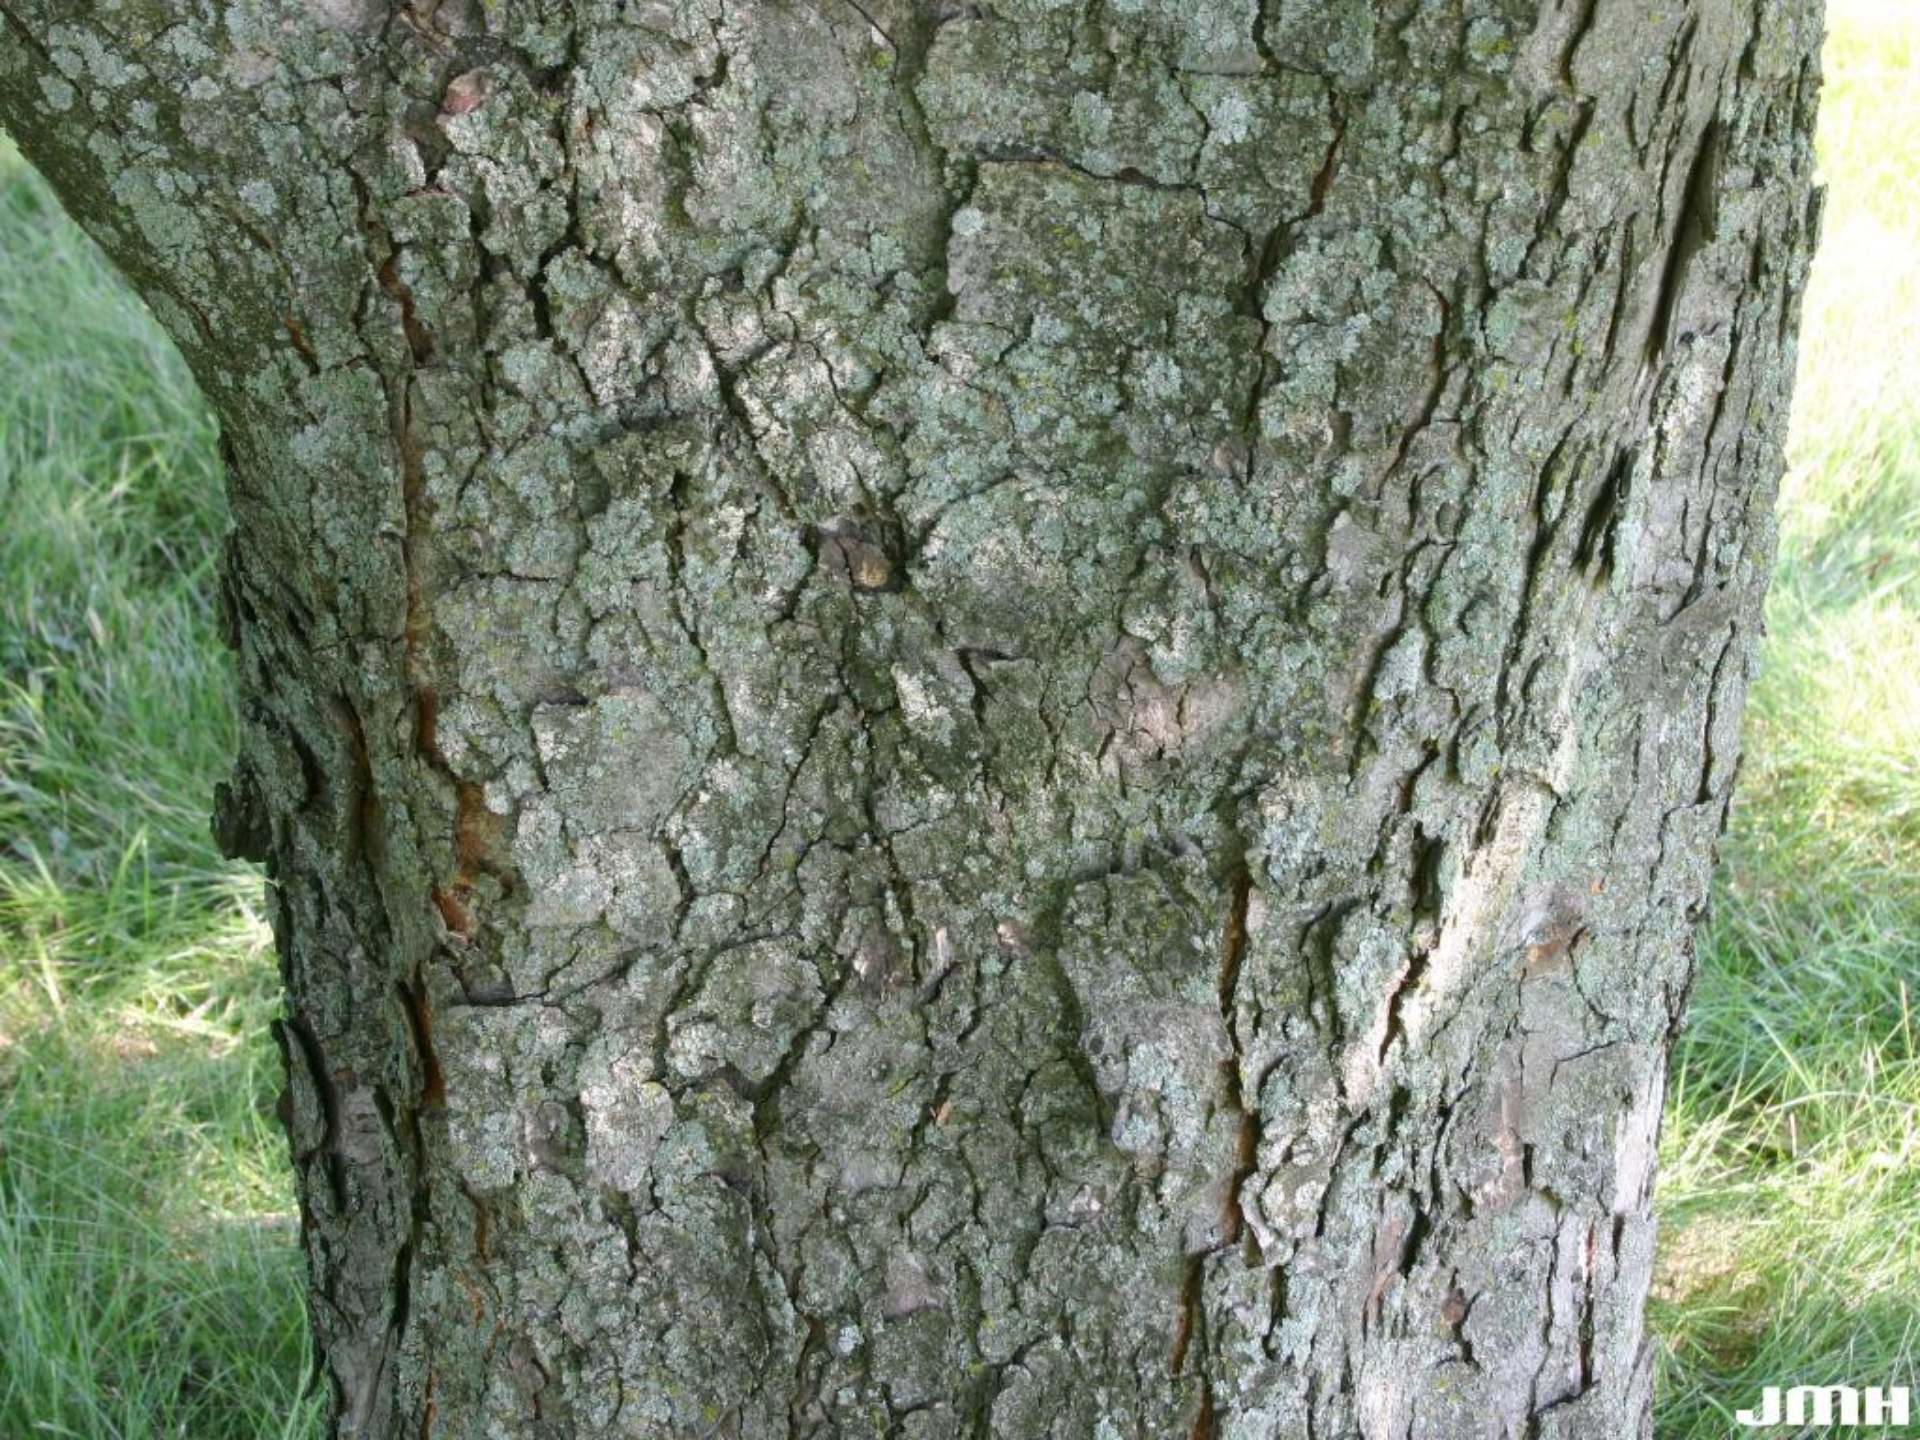 horse chestnut tree bark